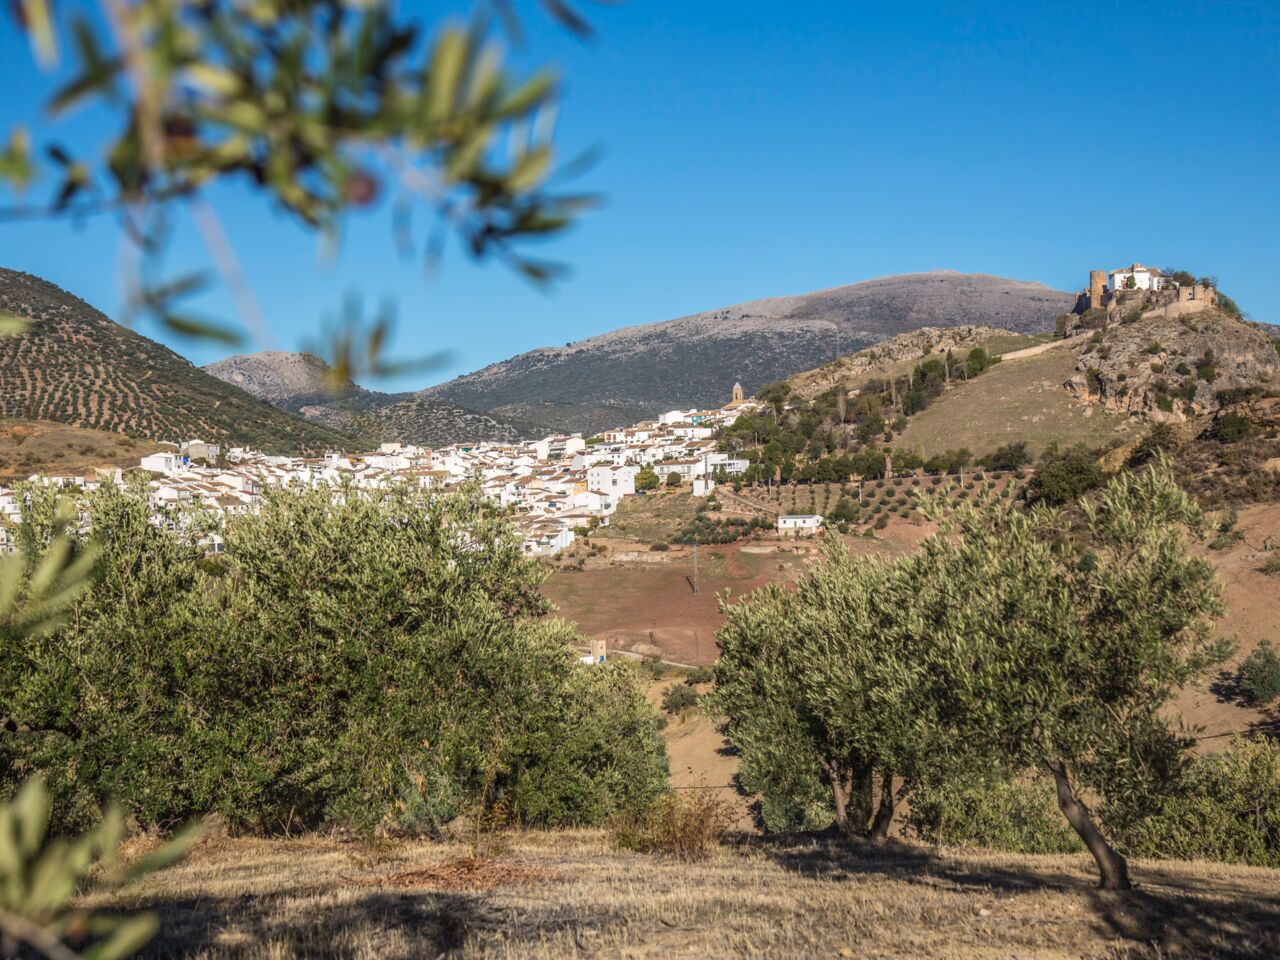 Landschaft mit Olivenbäumen. Das Bild illustriert die lange Tradition des Anbaus und der Herstellung von Spanischem Olivenöl.